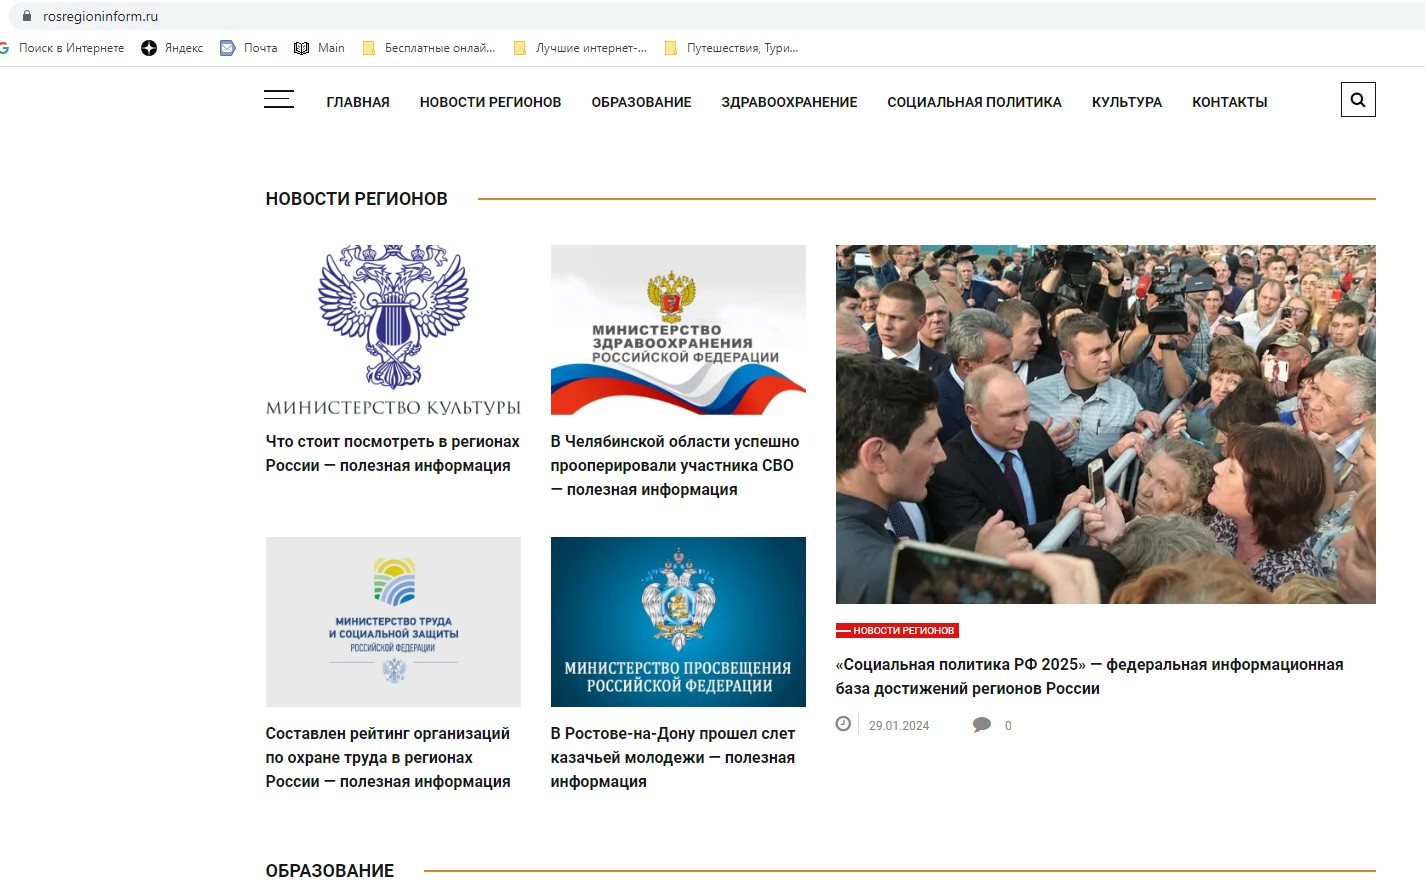 О формировании Федеральной информационной базы достижений регионов России «Социальная политика РФ - 2025».